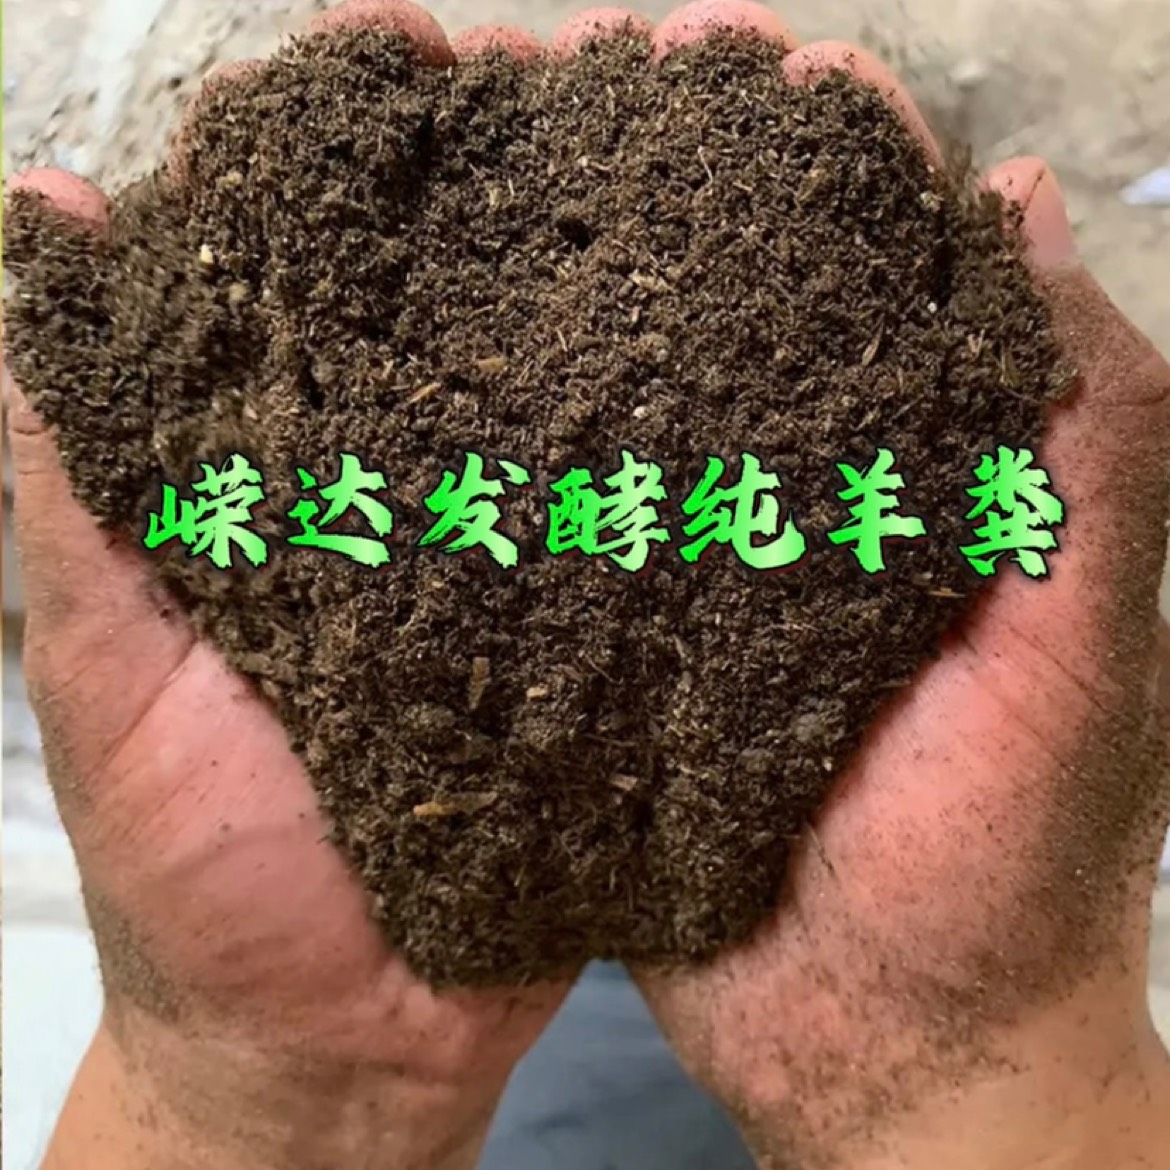 利津县山东嵘达生物肥业，寻求合作伙伴。